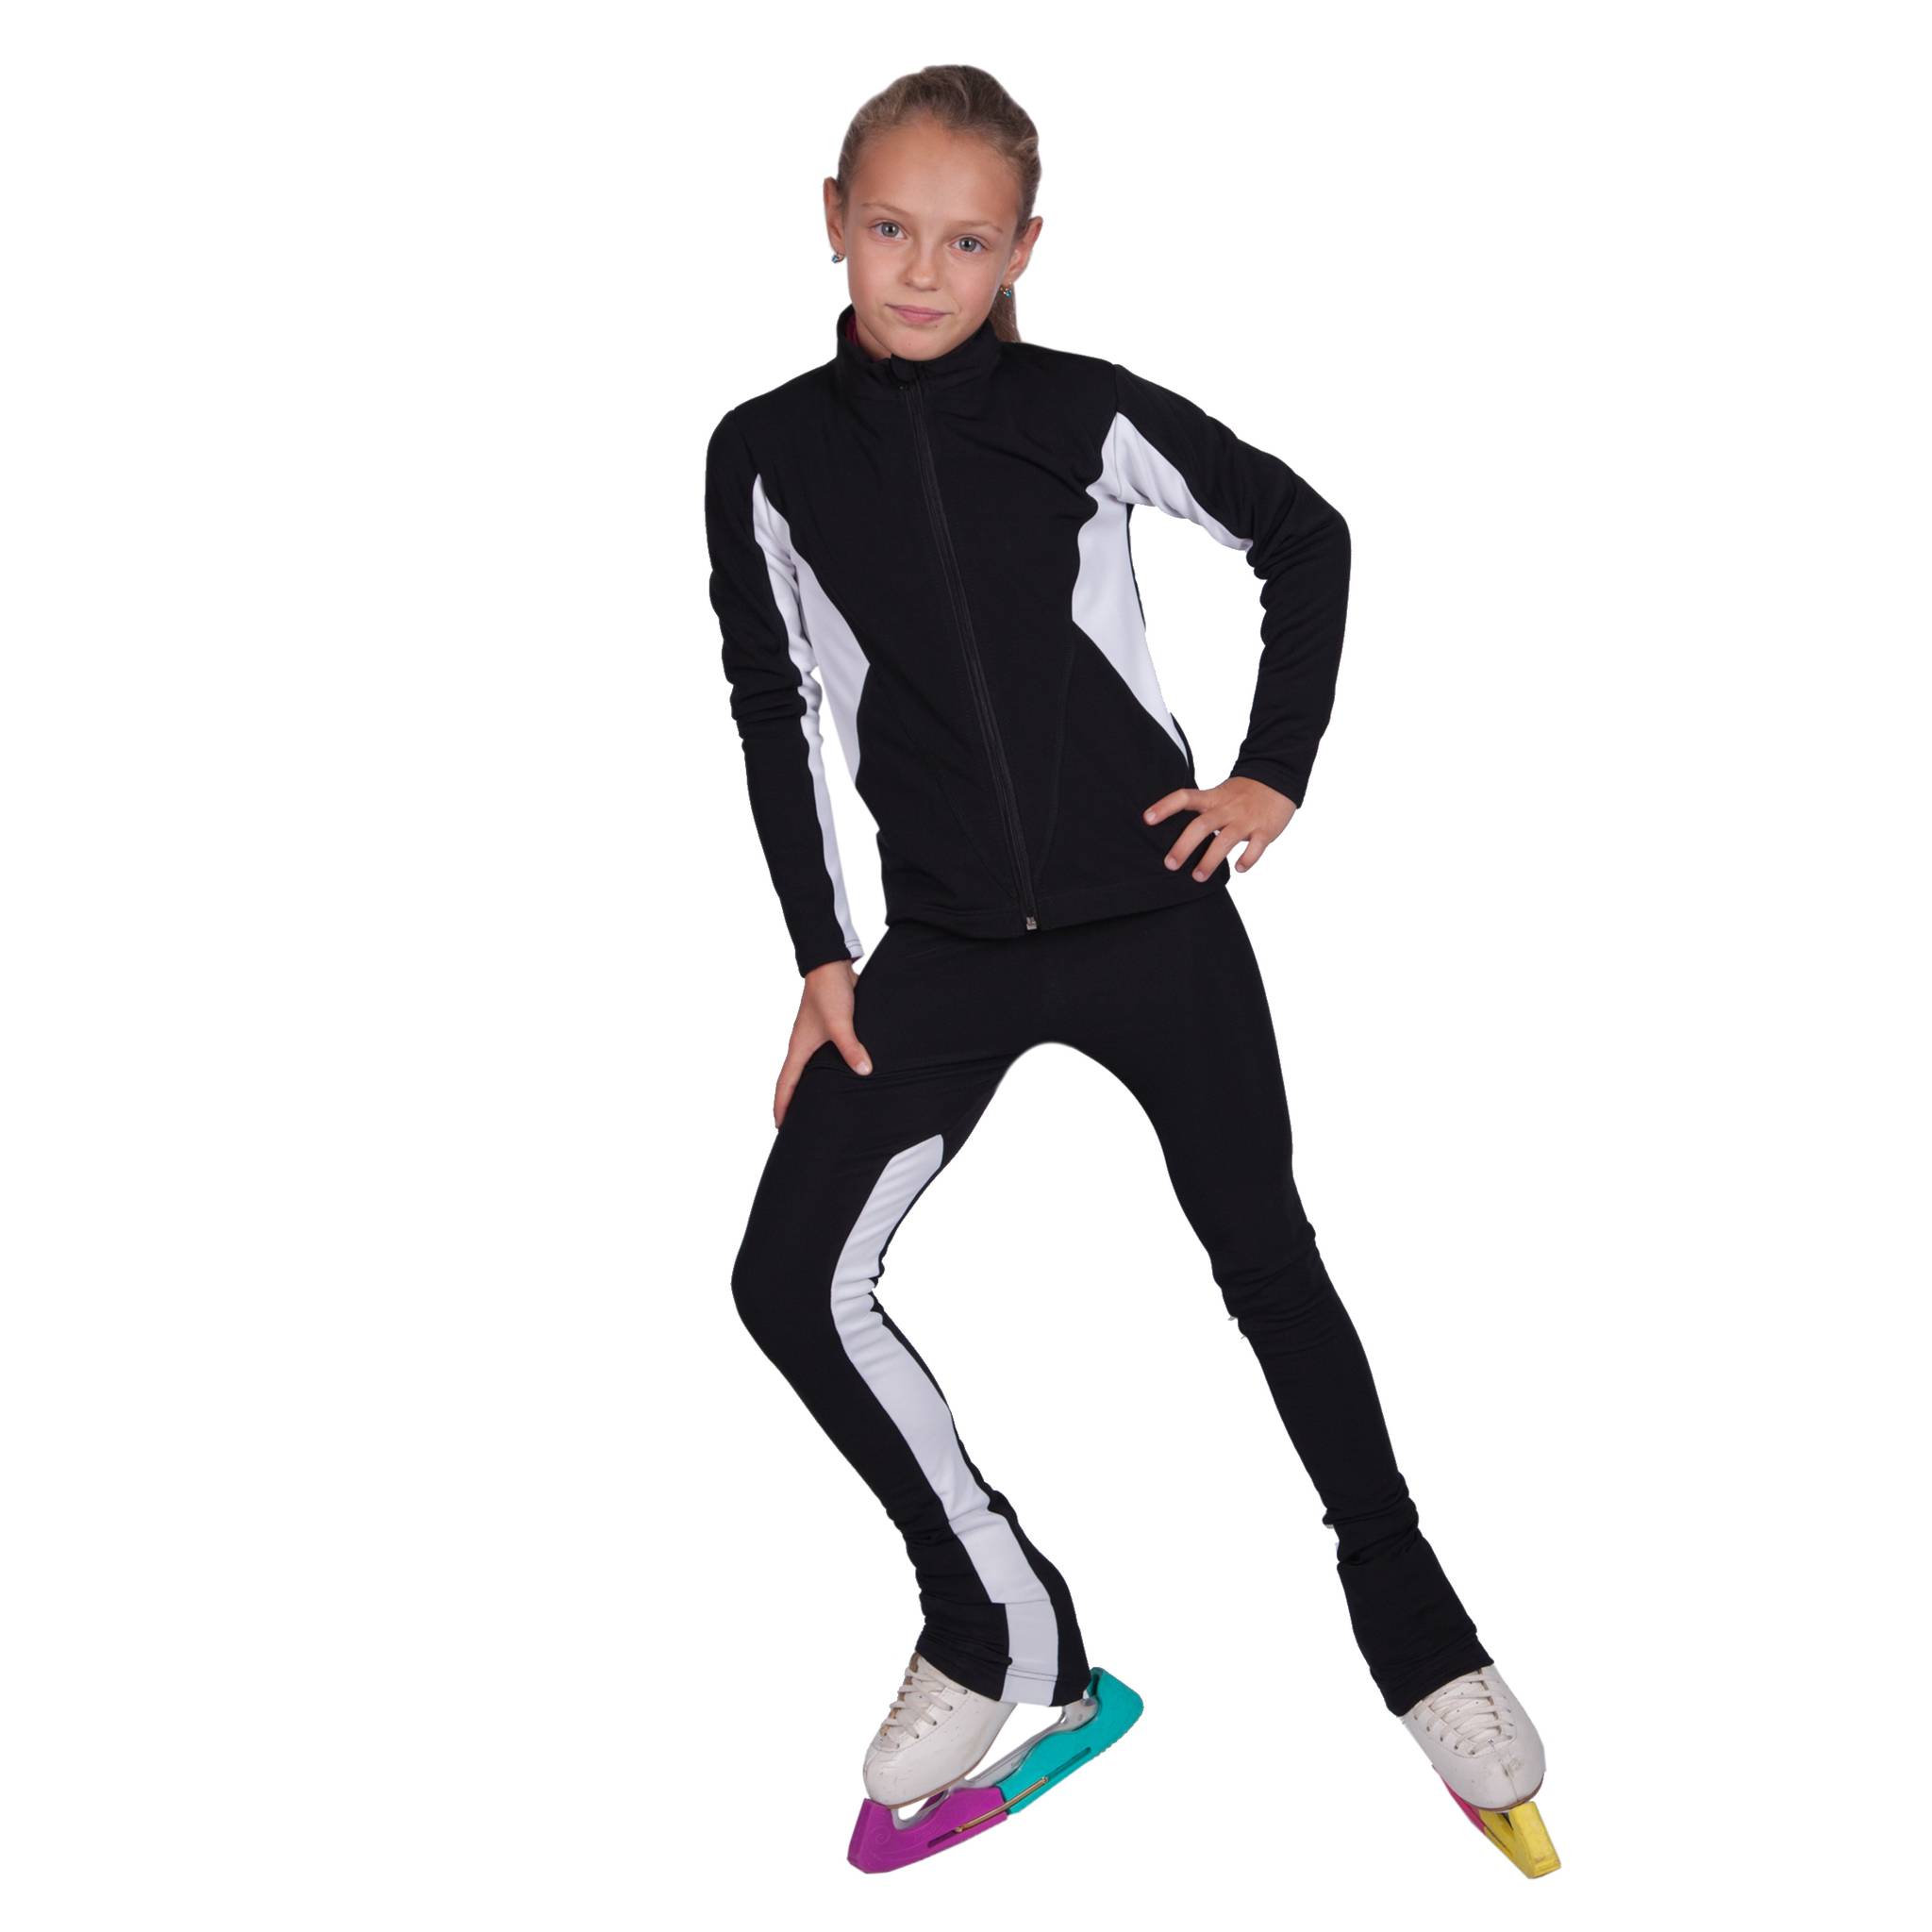 Костюм для фигурного катания для девочки: тренировочные платья и термоплатья, юбки для занятий и тренировок, фото